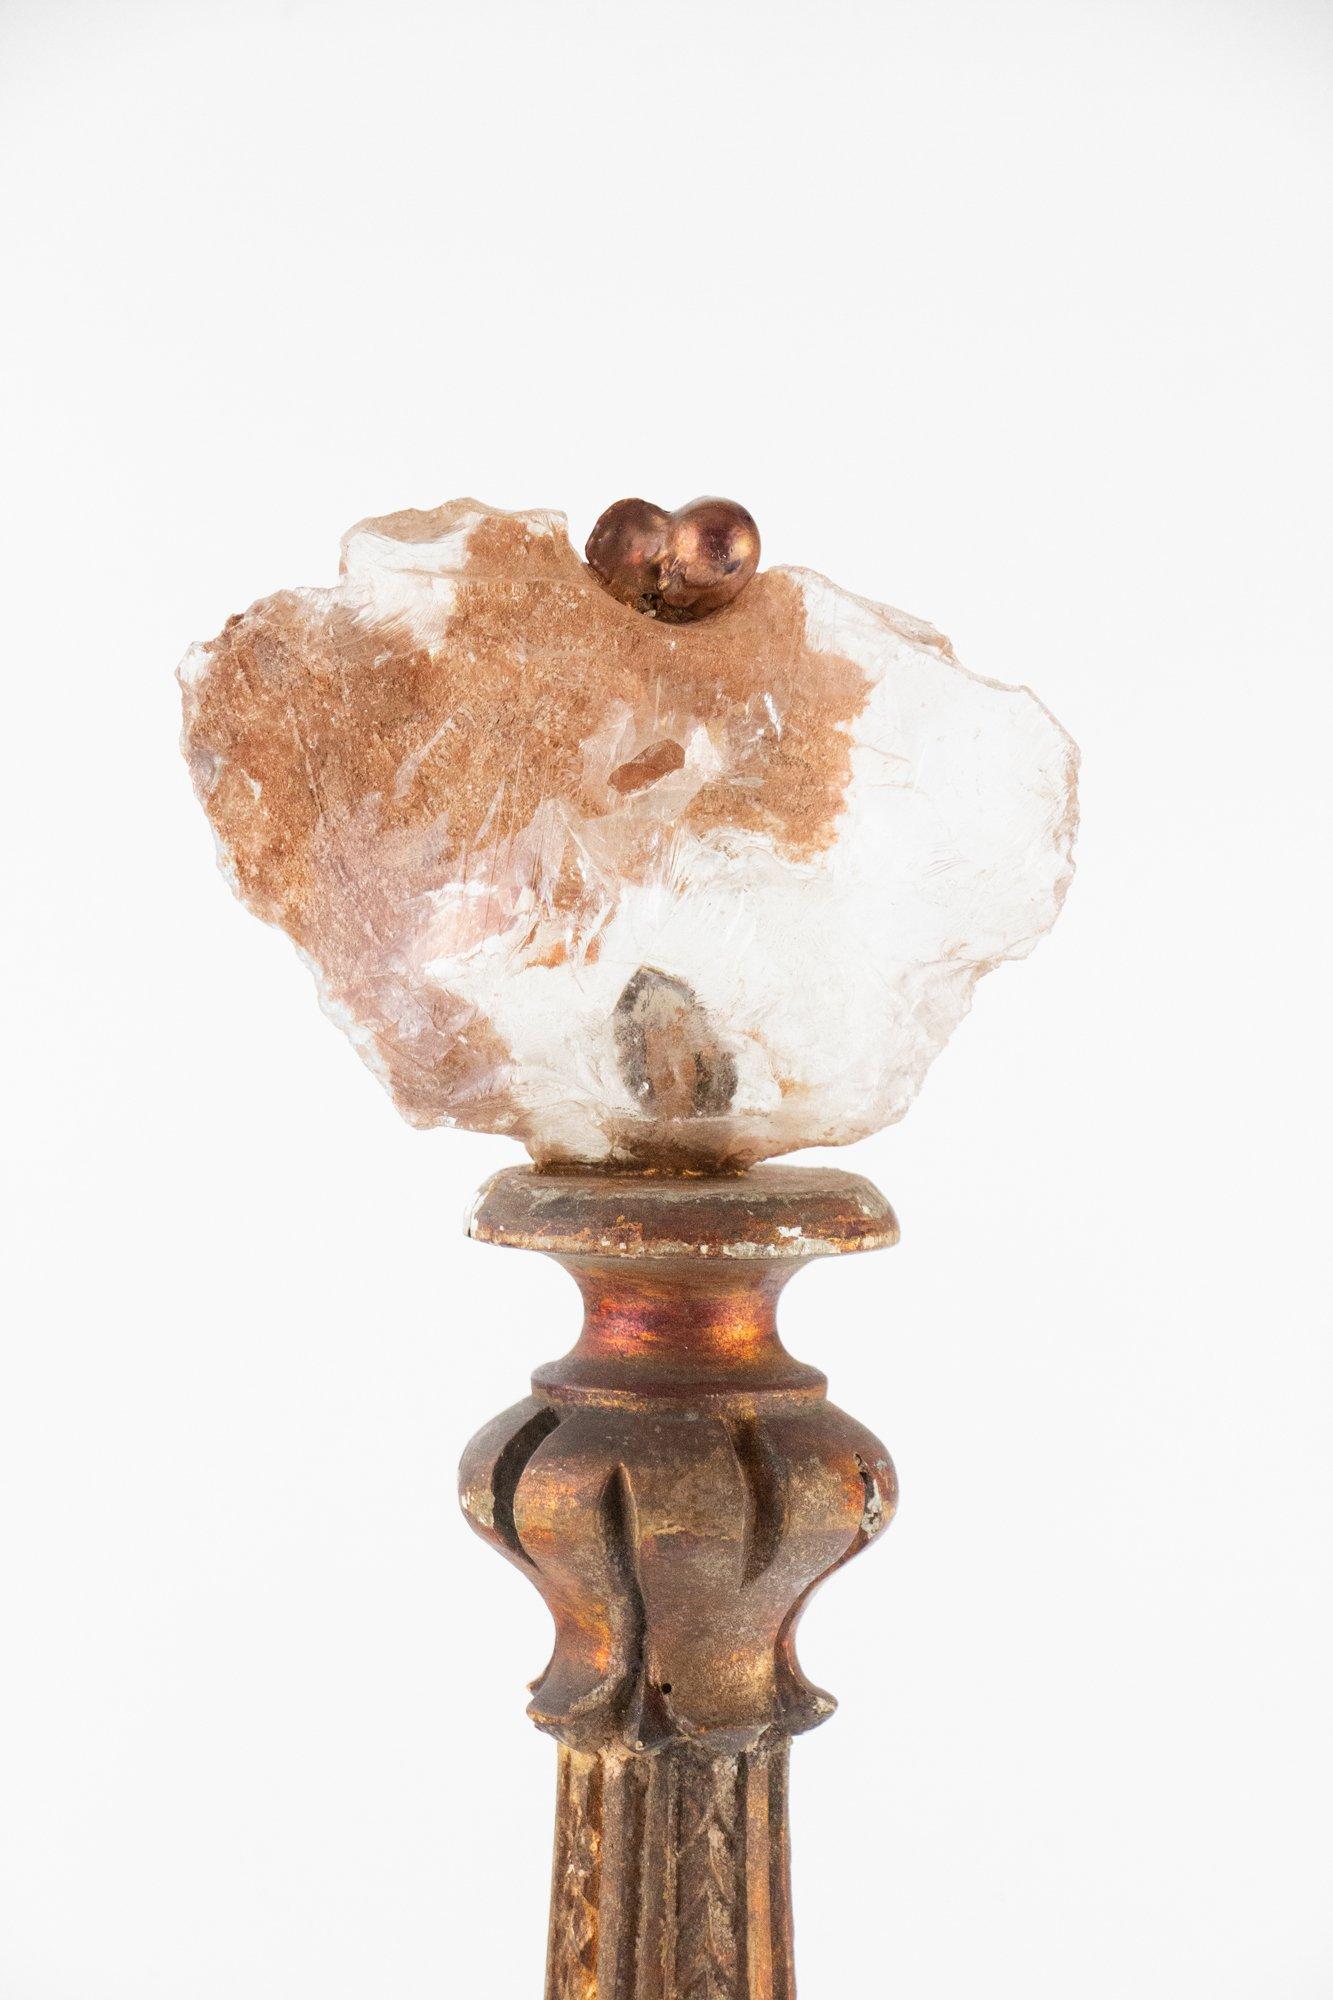 bougeoir italien du XVIIIe siècle décoré de verre de forme libre et de perles baroques sur une base en verre italien de type bobeche.

Le chandelier du 18e siècle vient de Toscane. Il est sculpté et peint à la main avec une peinture métallique